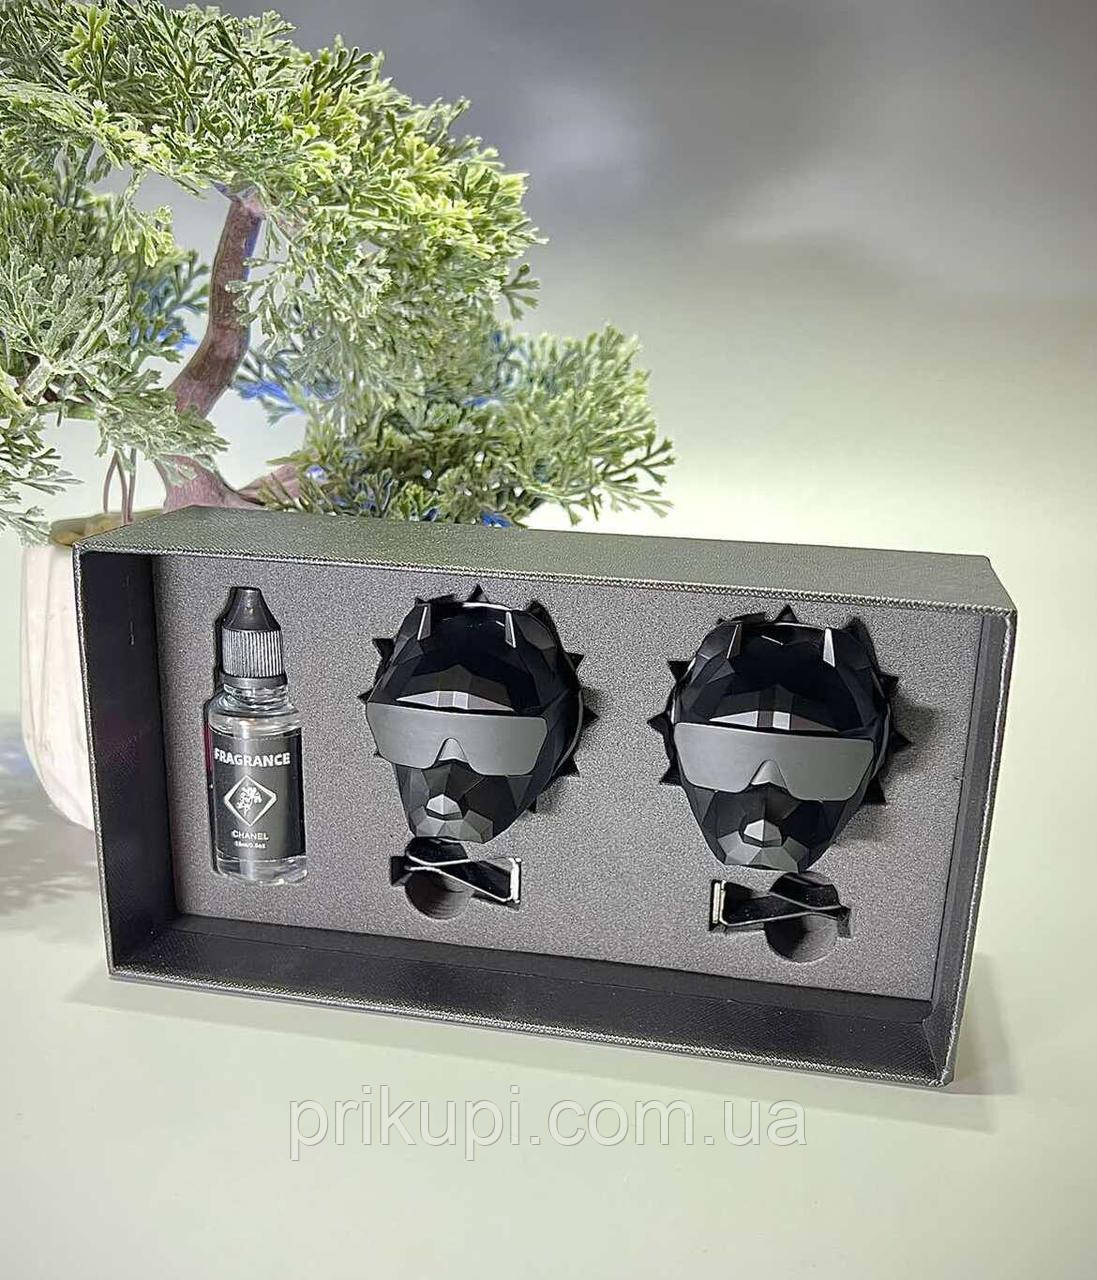 Подарунковий преміумамінізатор у машину на дефлектор Pitbull + рідина чоловічих парфумів CHANEL (матовий)